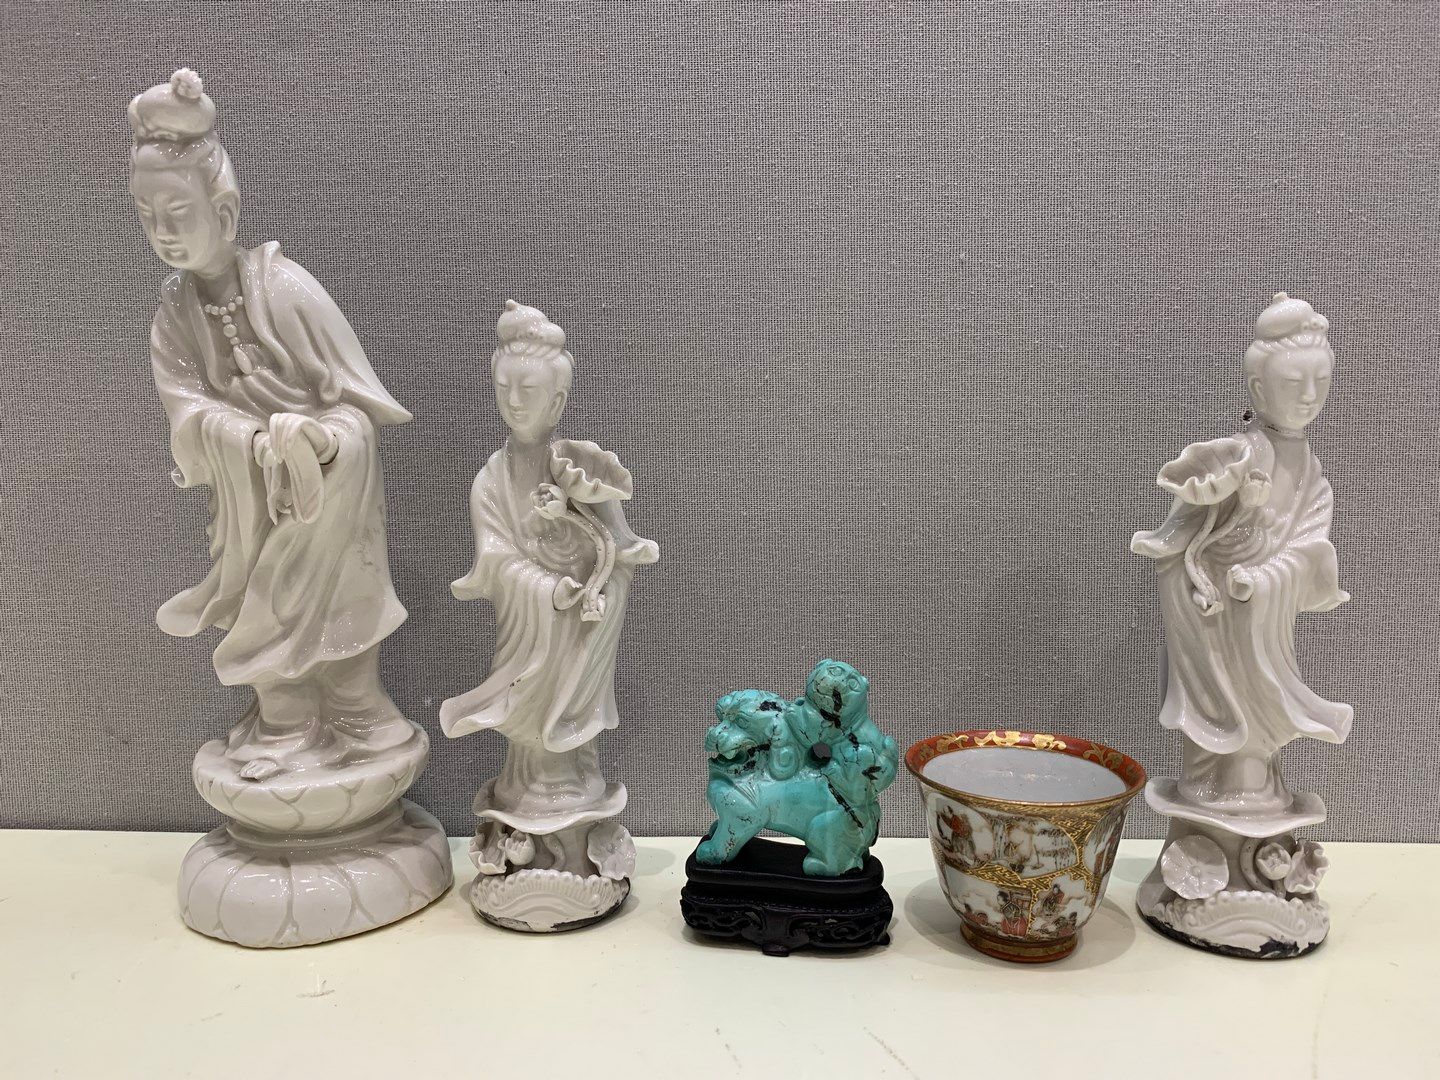 Null 中国地段 :

3个来自中国的巴伦克雕像

坚硬的石头制成的佛像

一个白色和蓝色的盘子

一只绿松石的福狗

萨摩酒碗

拱门式有盖锅